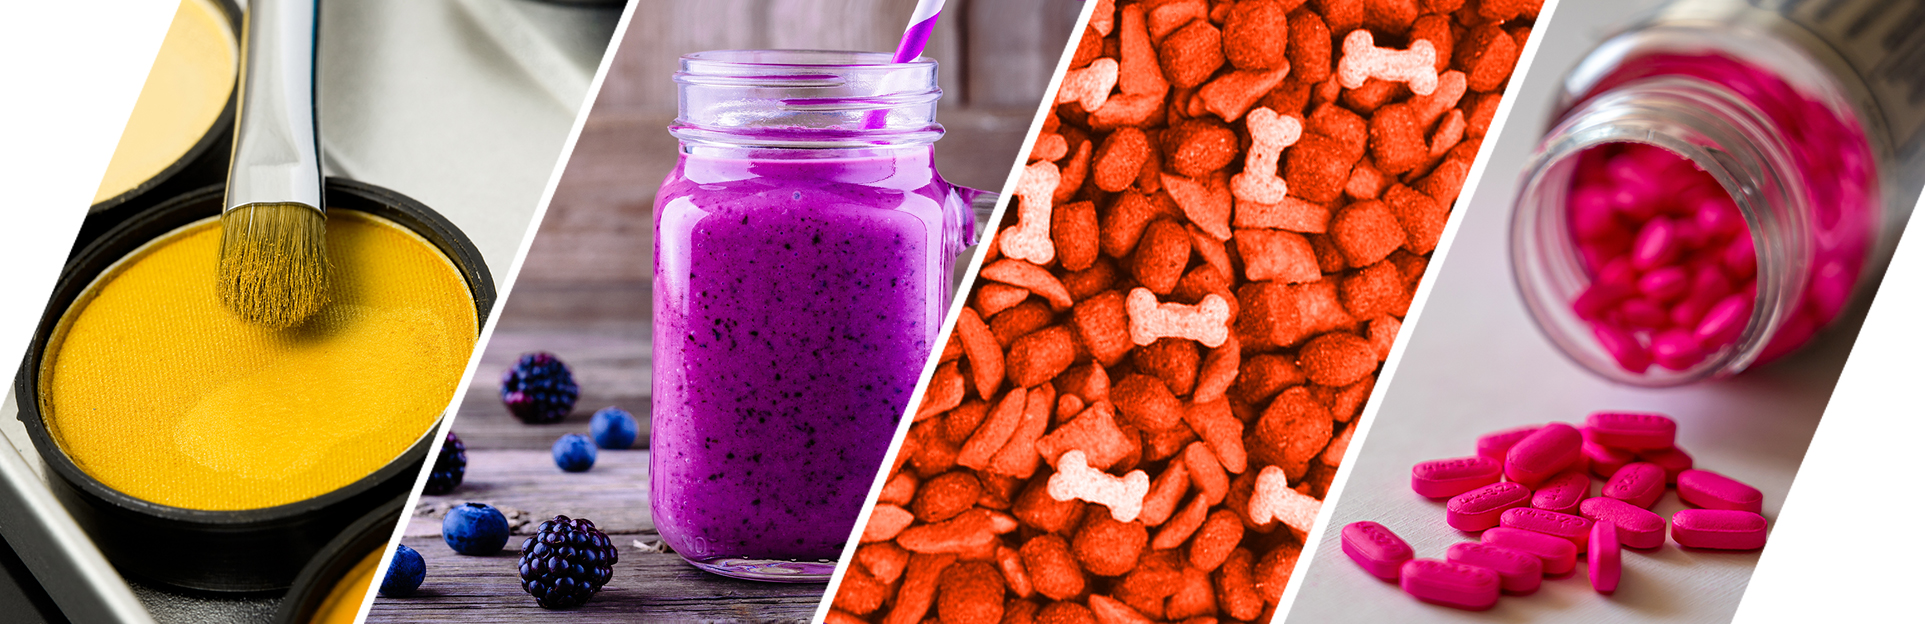 Colorante alimentario en gel: añade un toque vibrante a tus comidas con nuestros colorantes en gel para alimentos.